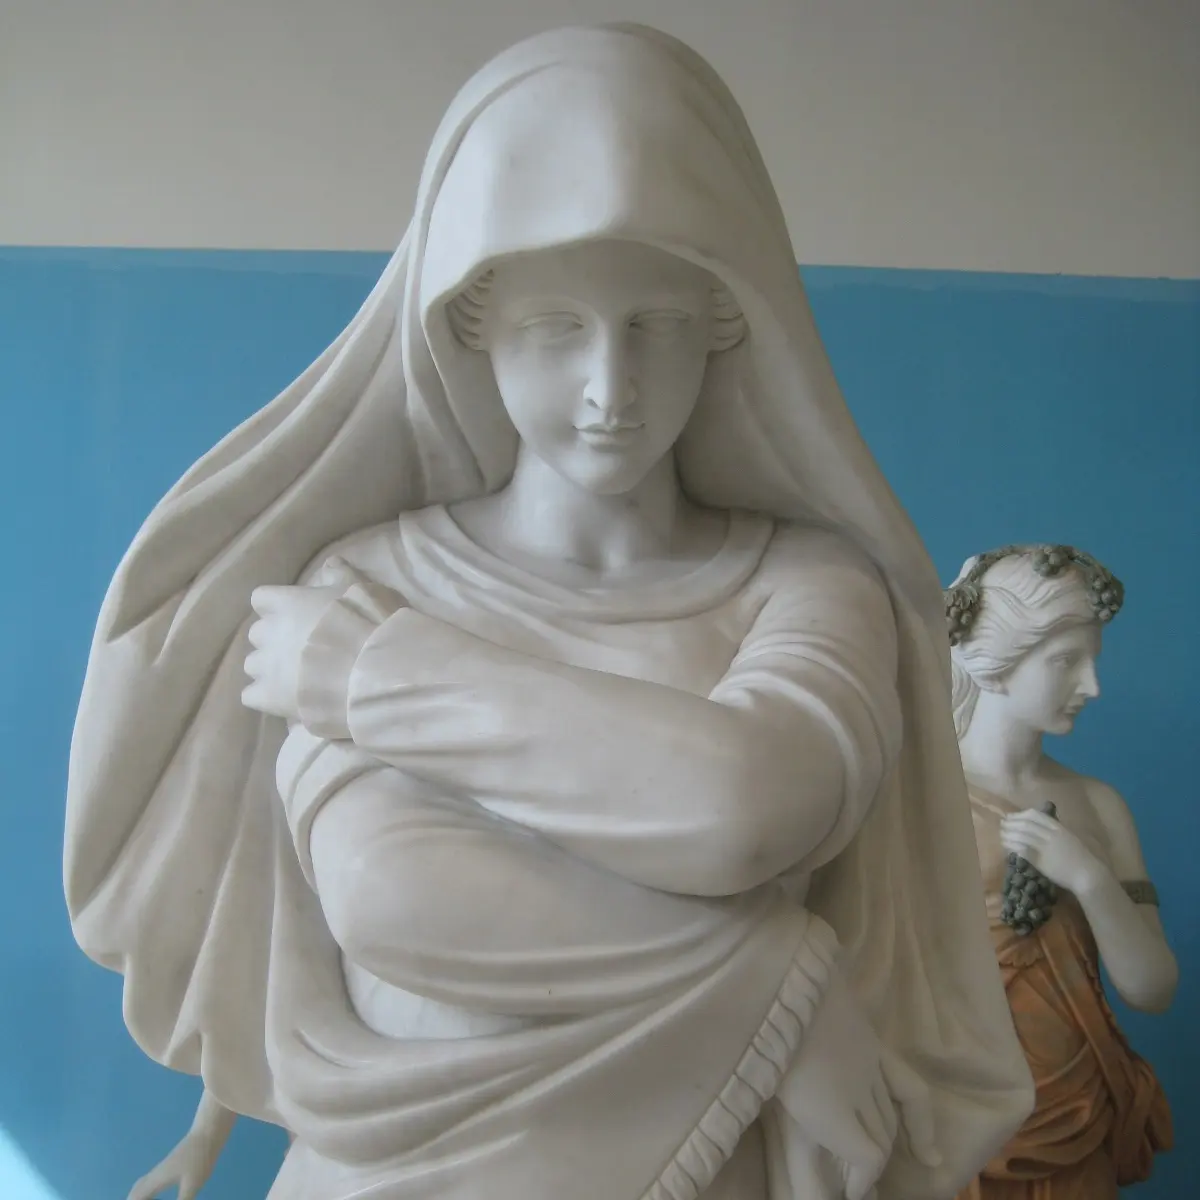 인기있는 생생하게 대리석 레이디 동상 유명한 생활 크기 성모 마리아 대리석 동상 판매